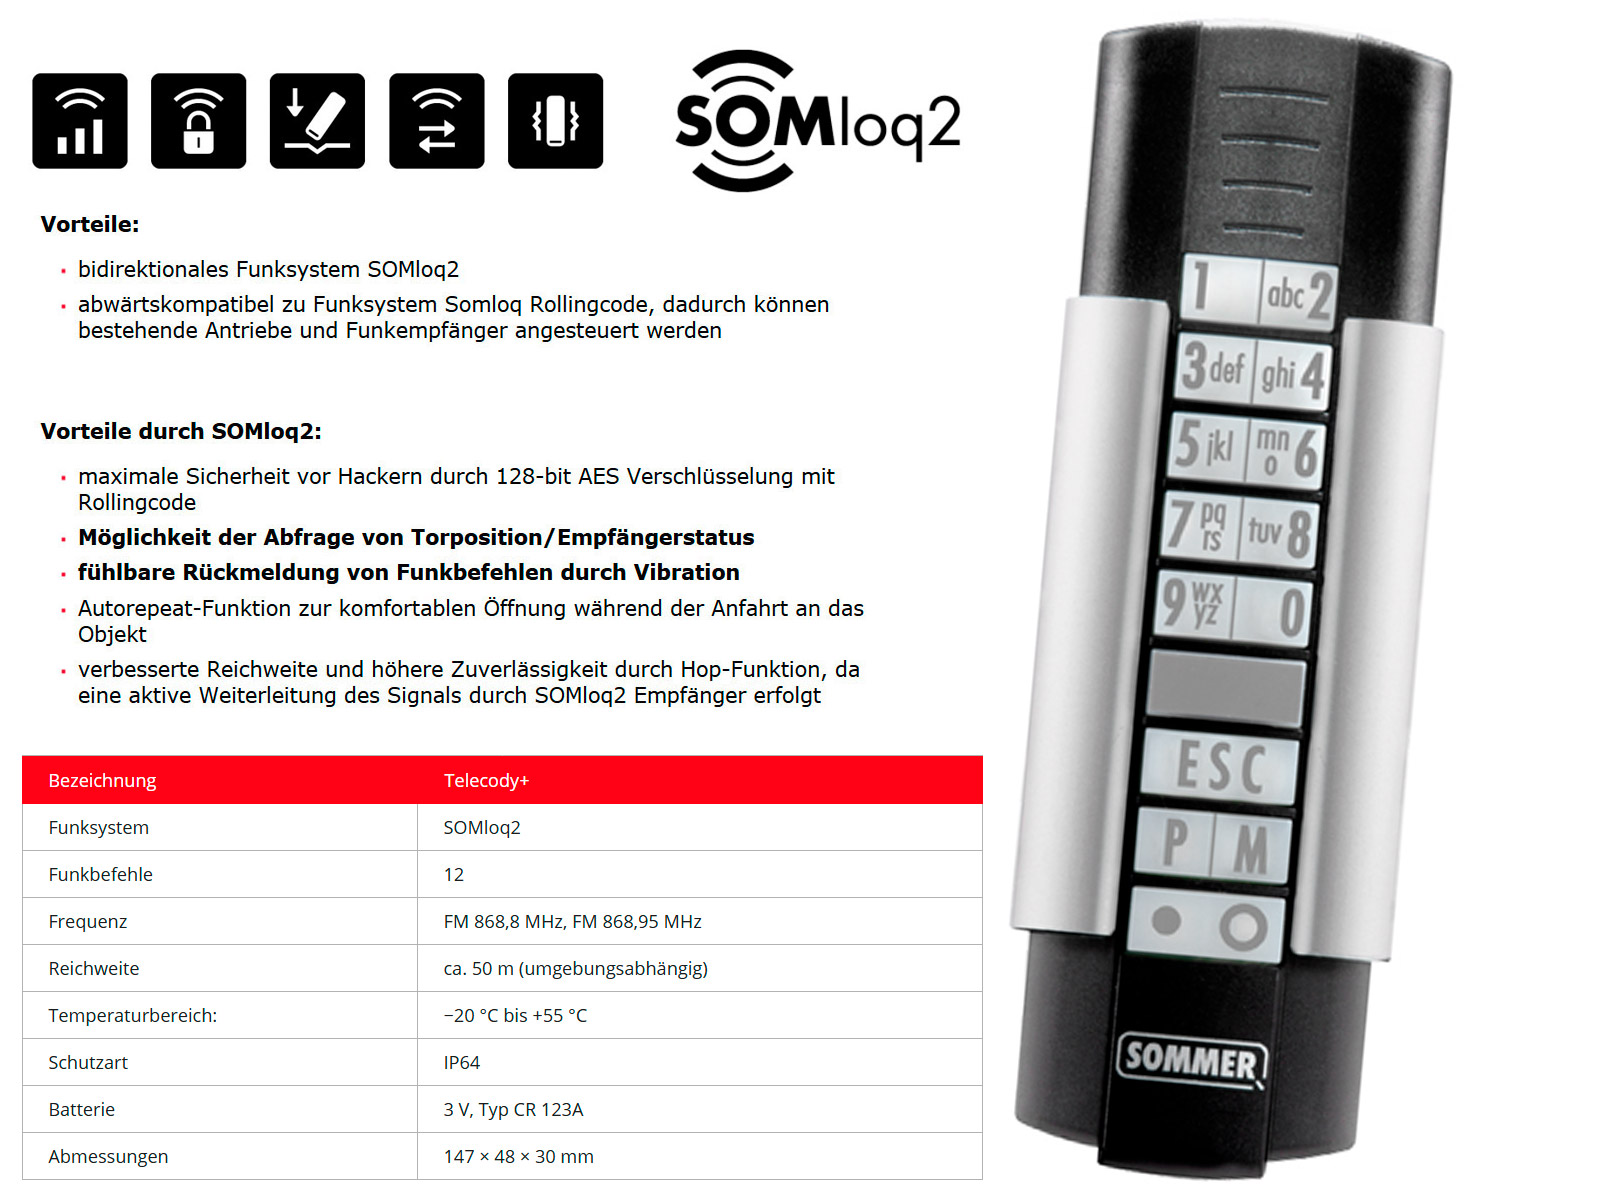 Sommer S10212-00001 Telecody Handsender 868,95 MHz 12-Befehl Schwarz//Silber